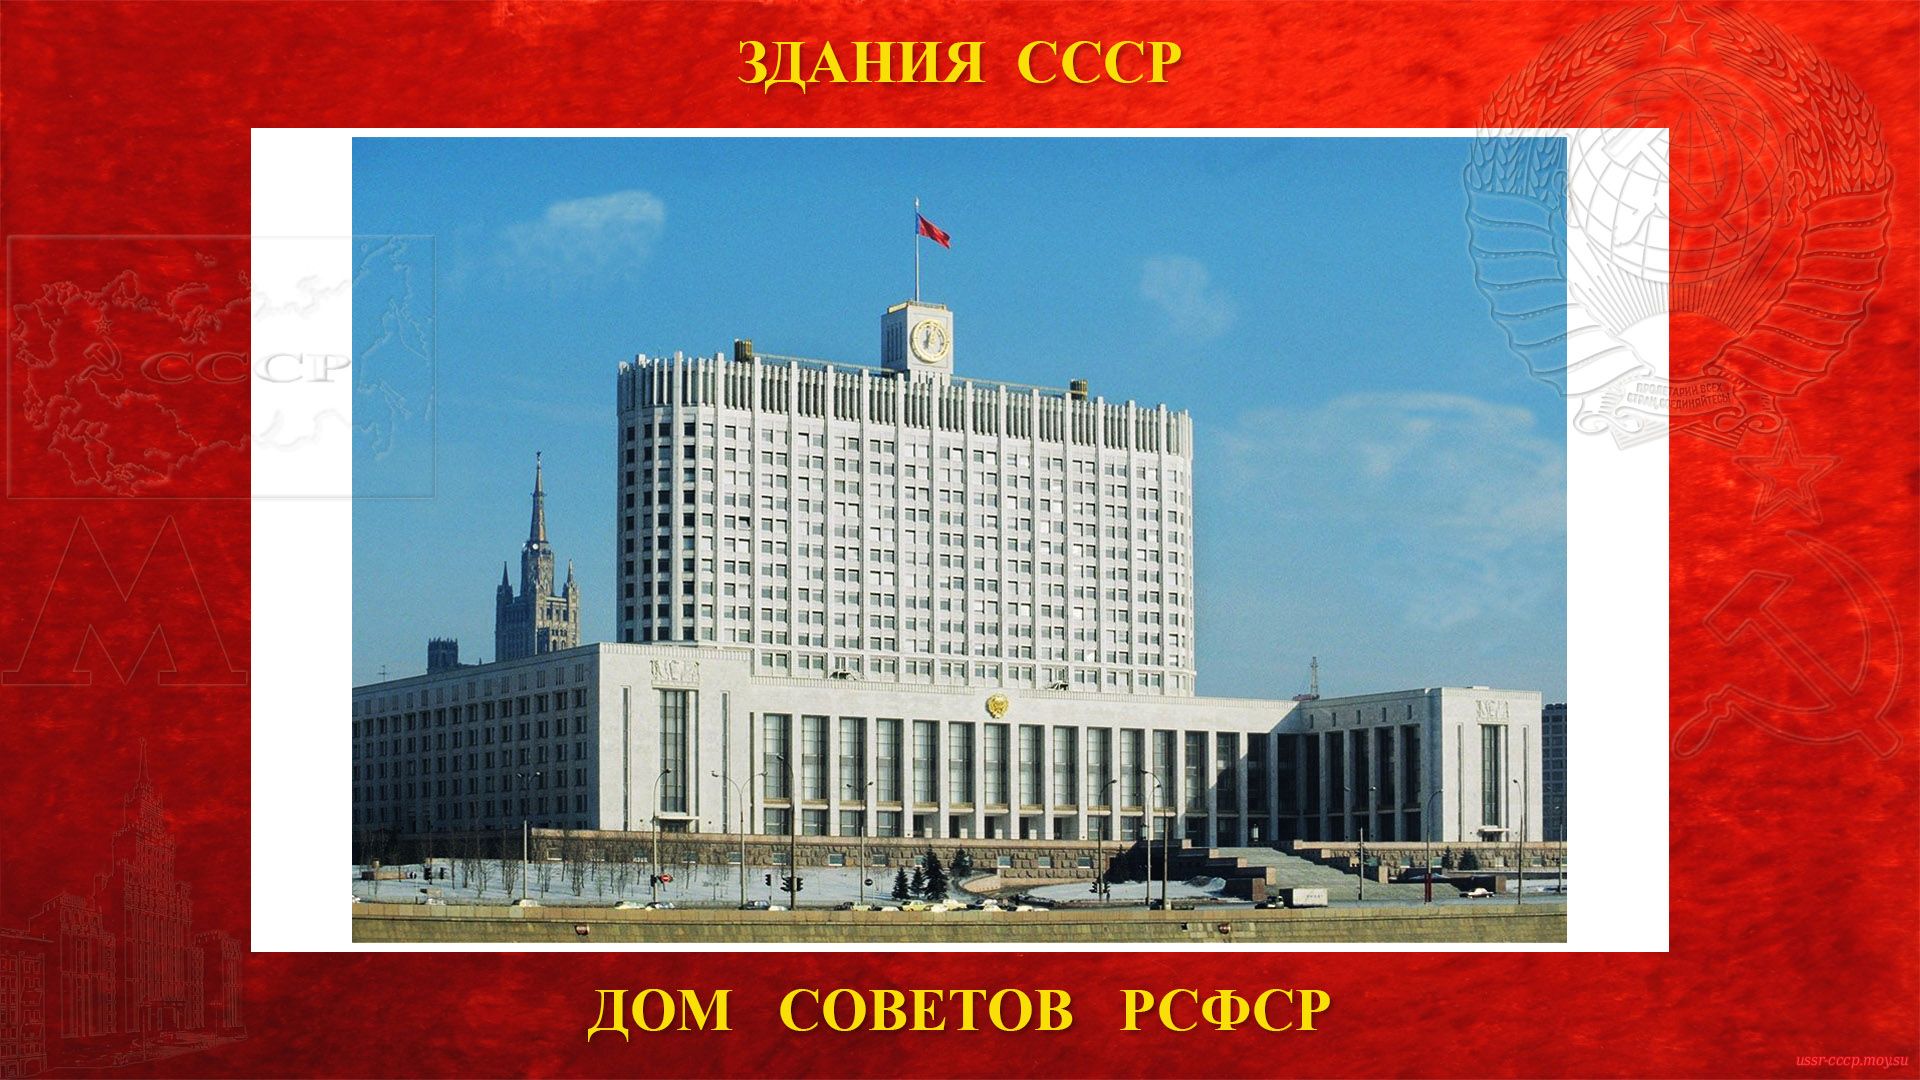 Дом Советов РСФСР — Правительственное здание в центре Москвы